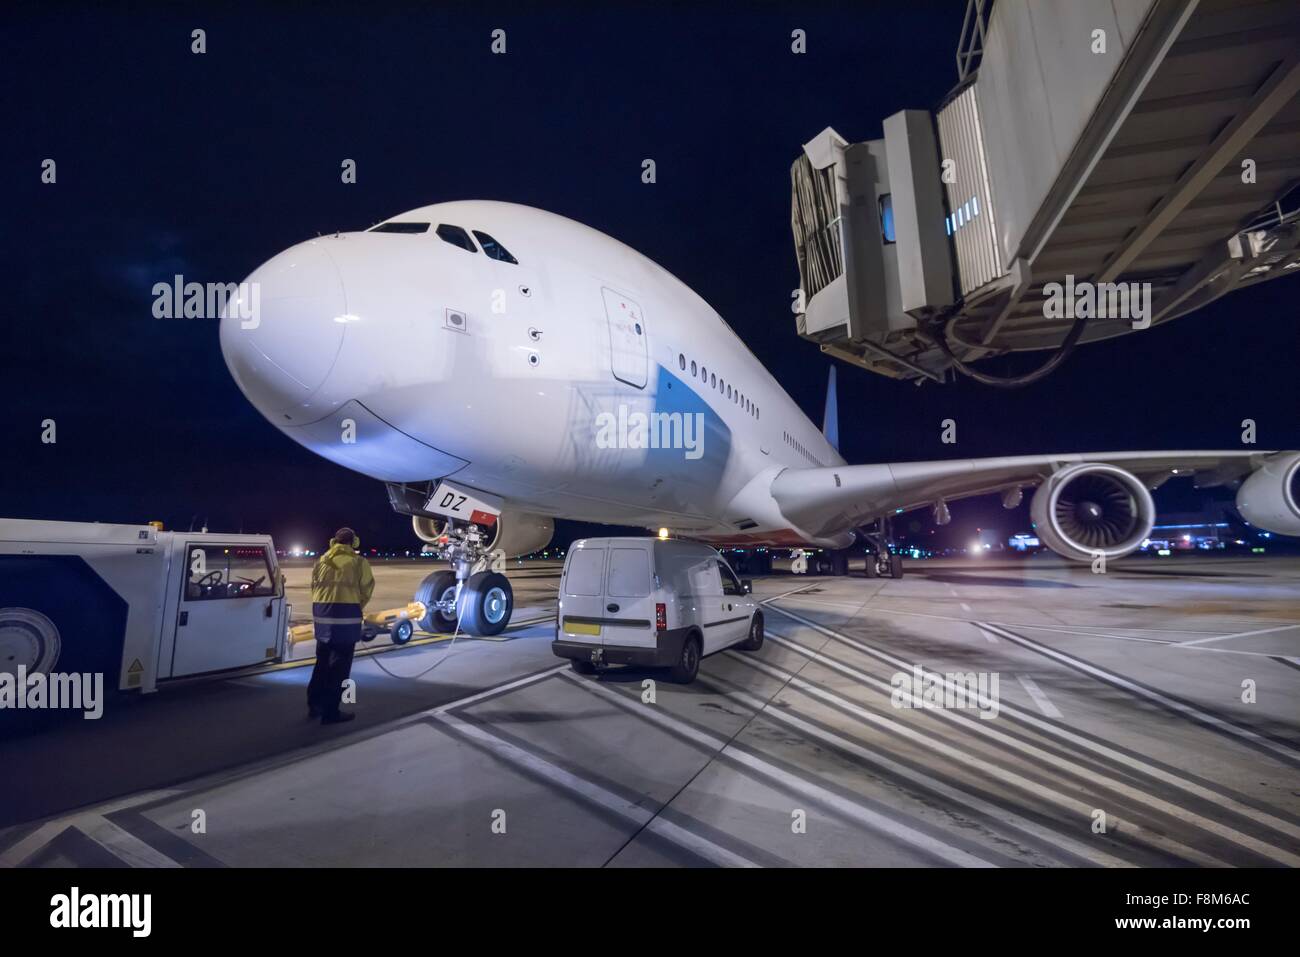 Ingeniero jefe con aviones A380 en la pista durante la noche Foto de stock